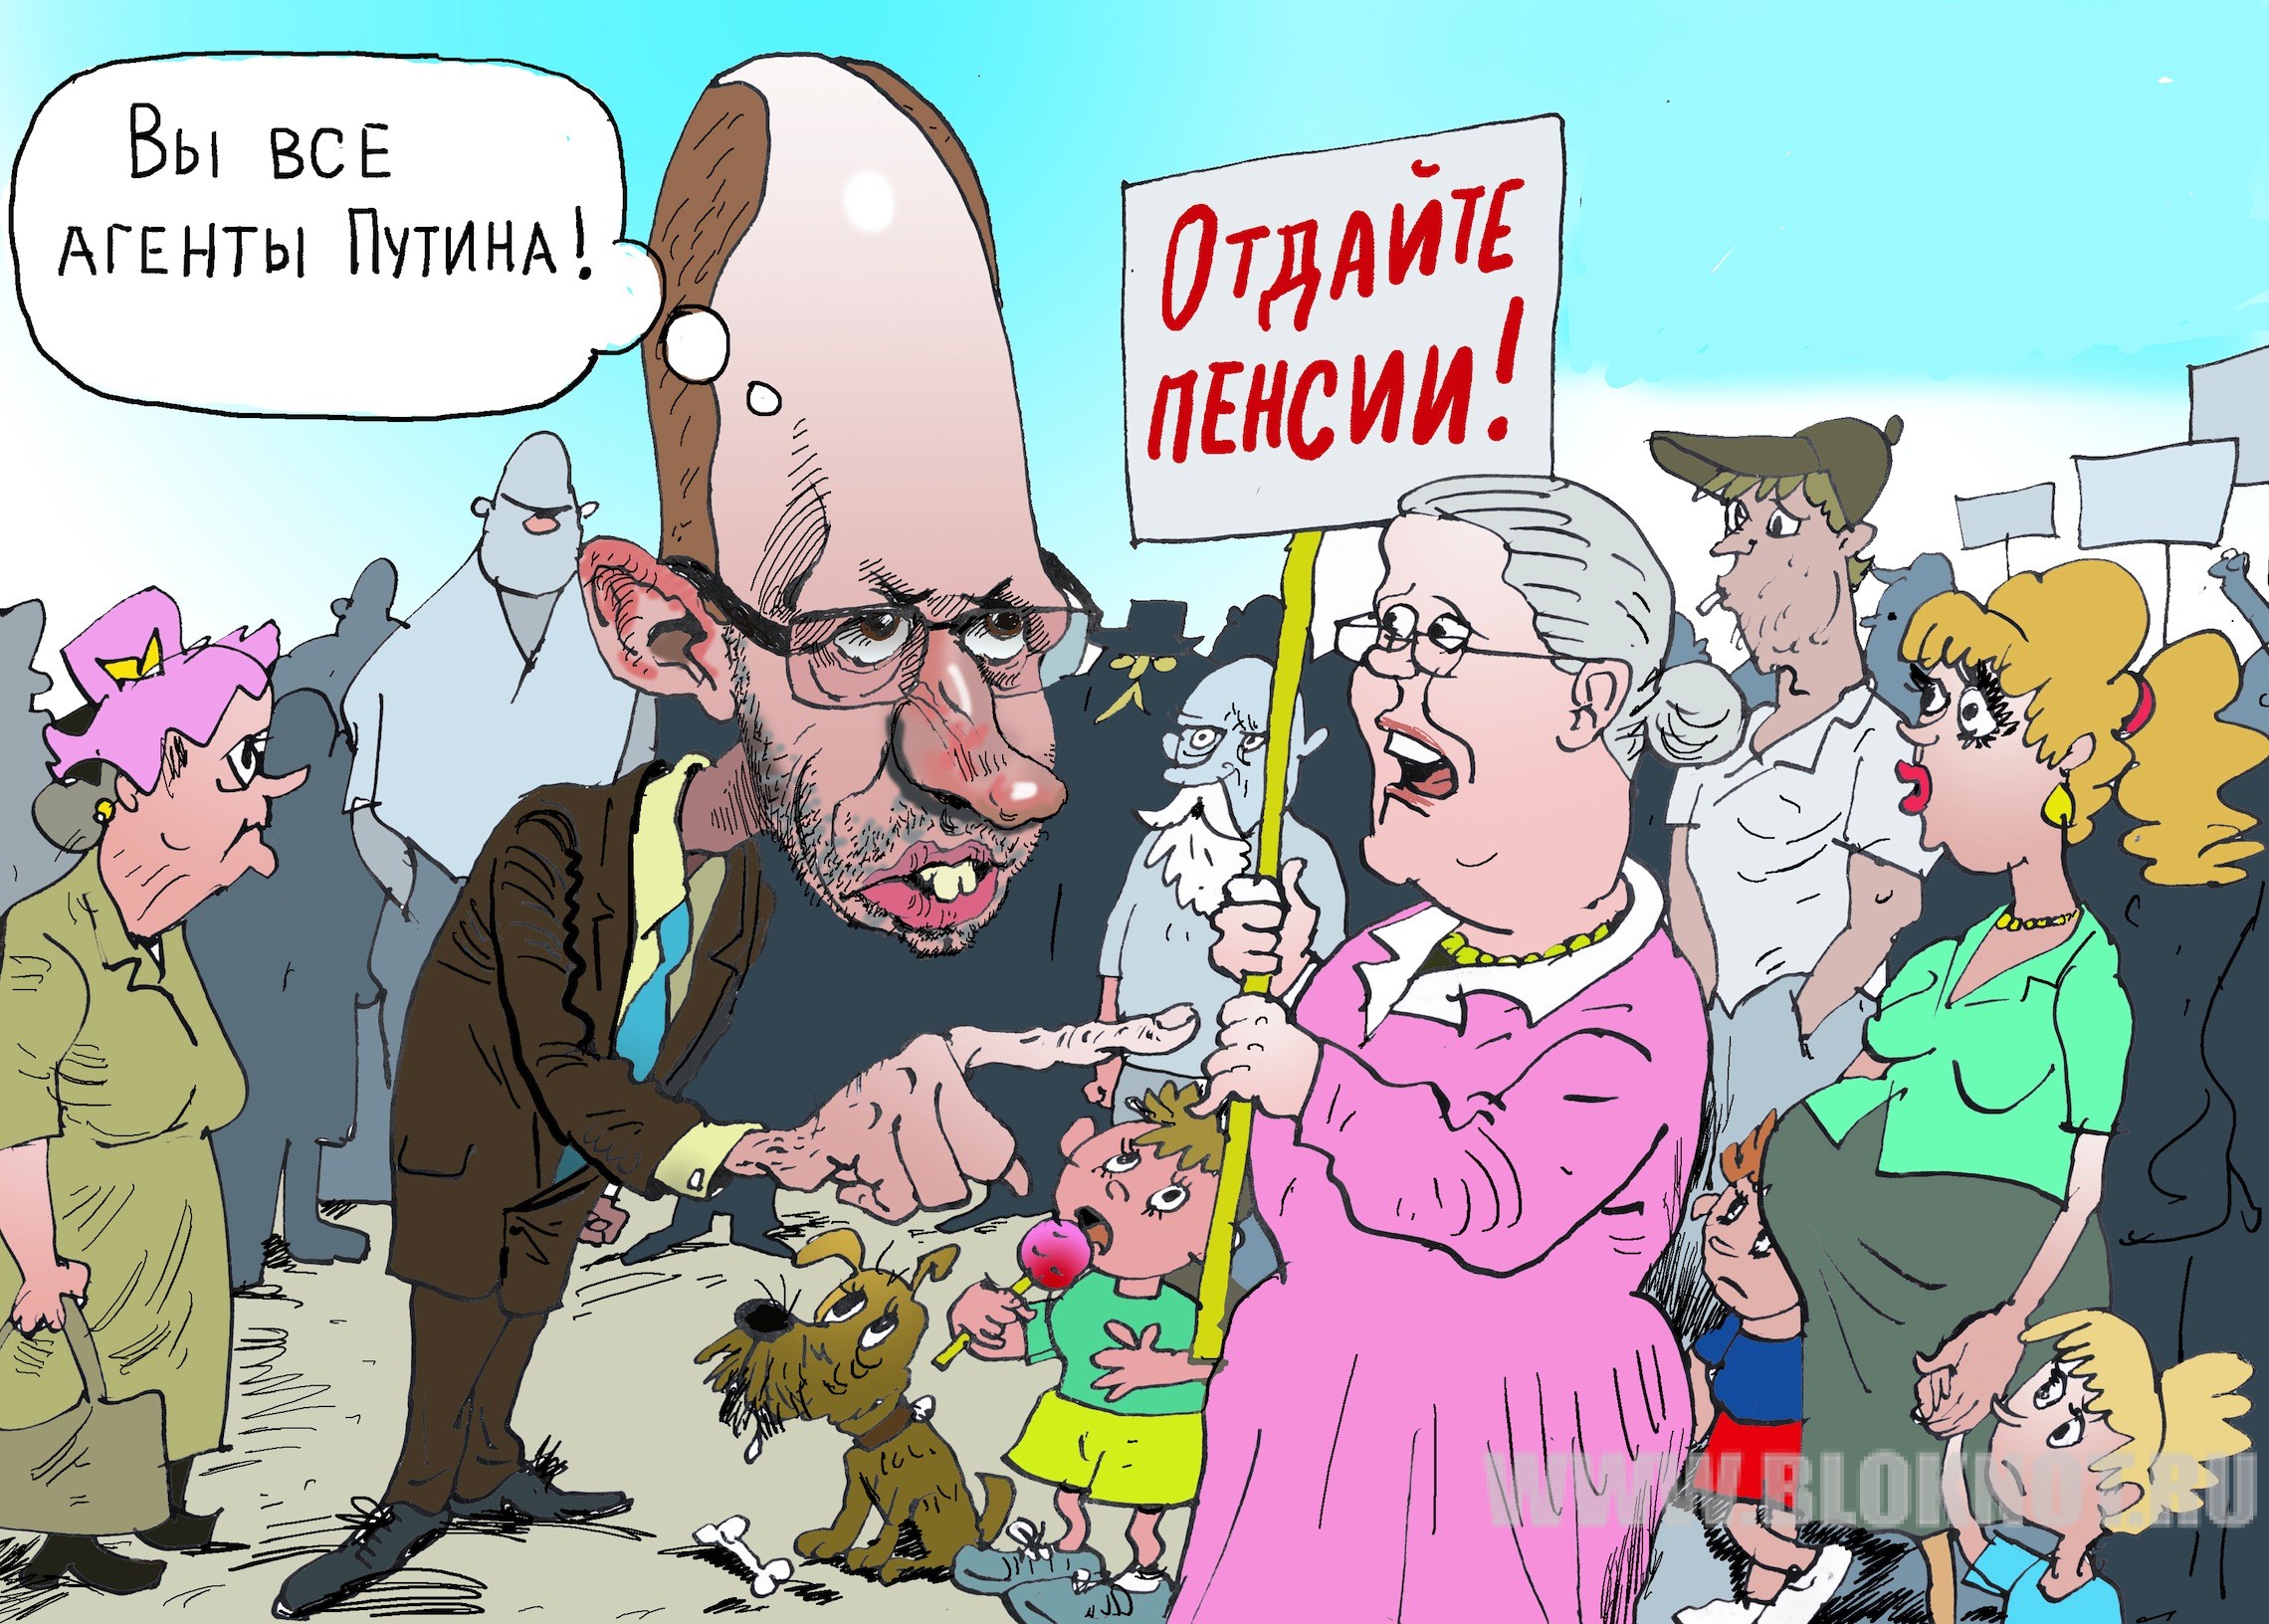 Путин пенсия карикатура